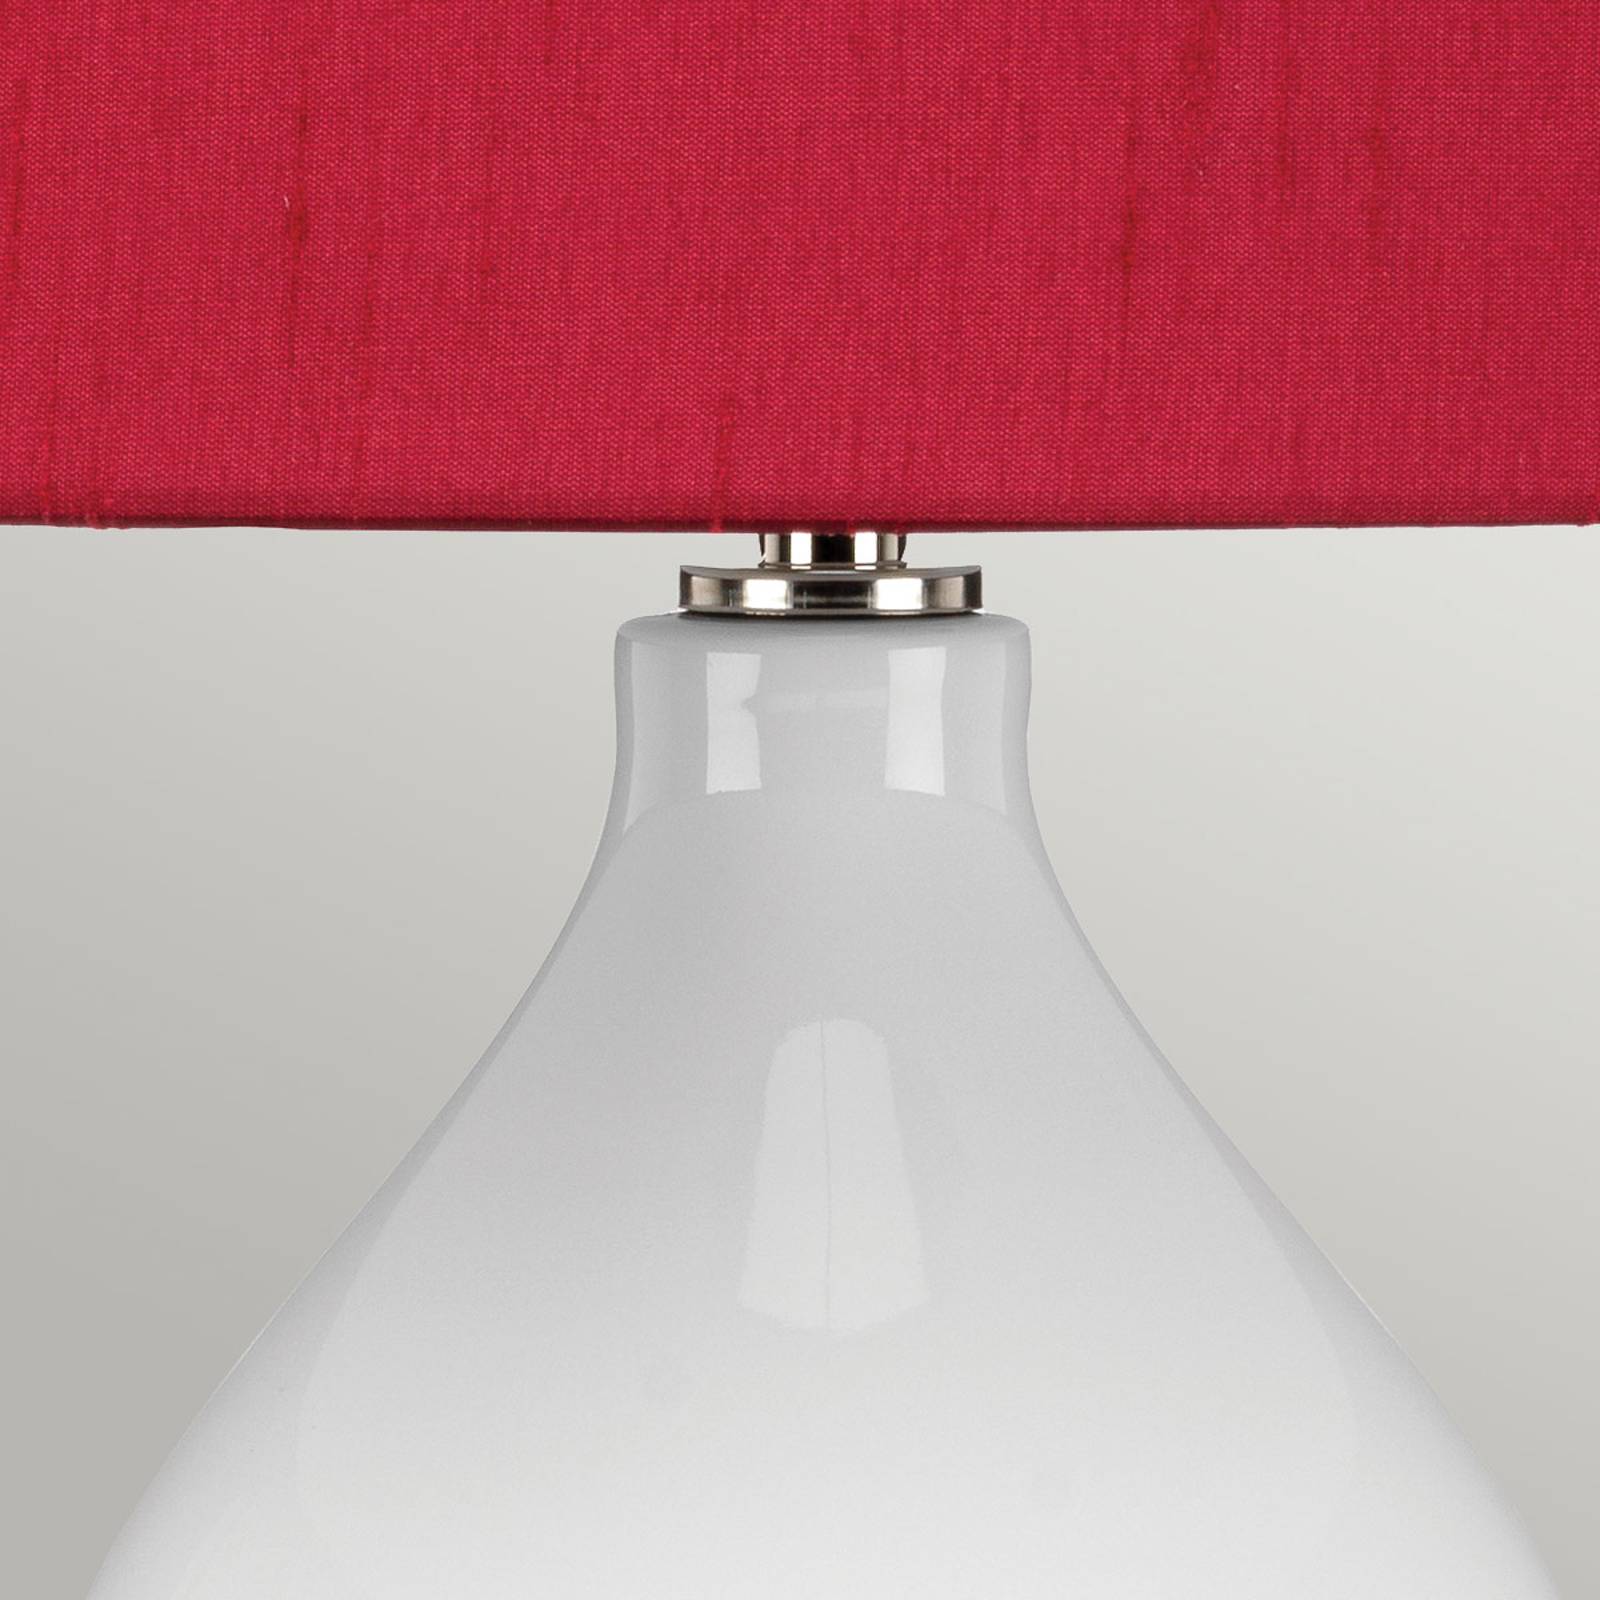 Textil-Tischlampe Isla nickel poliert/rot von ELSTEAD